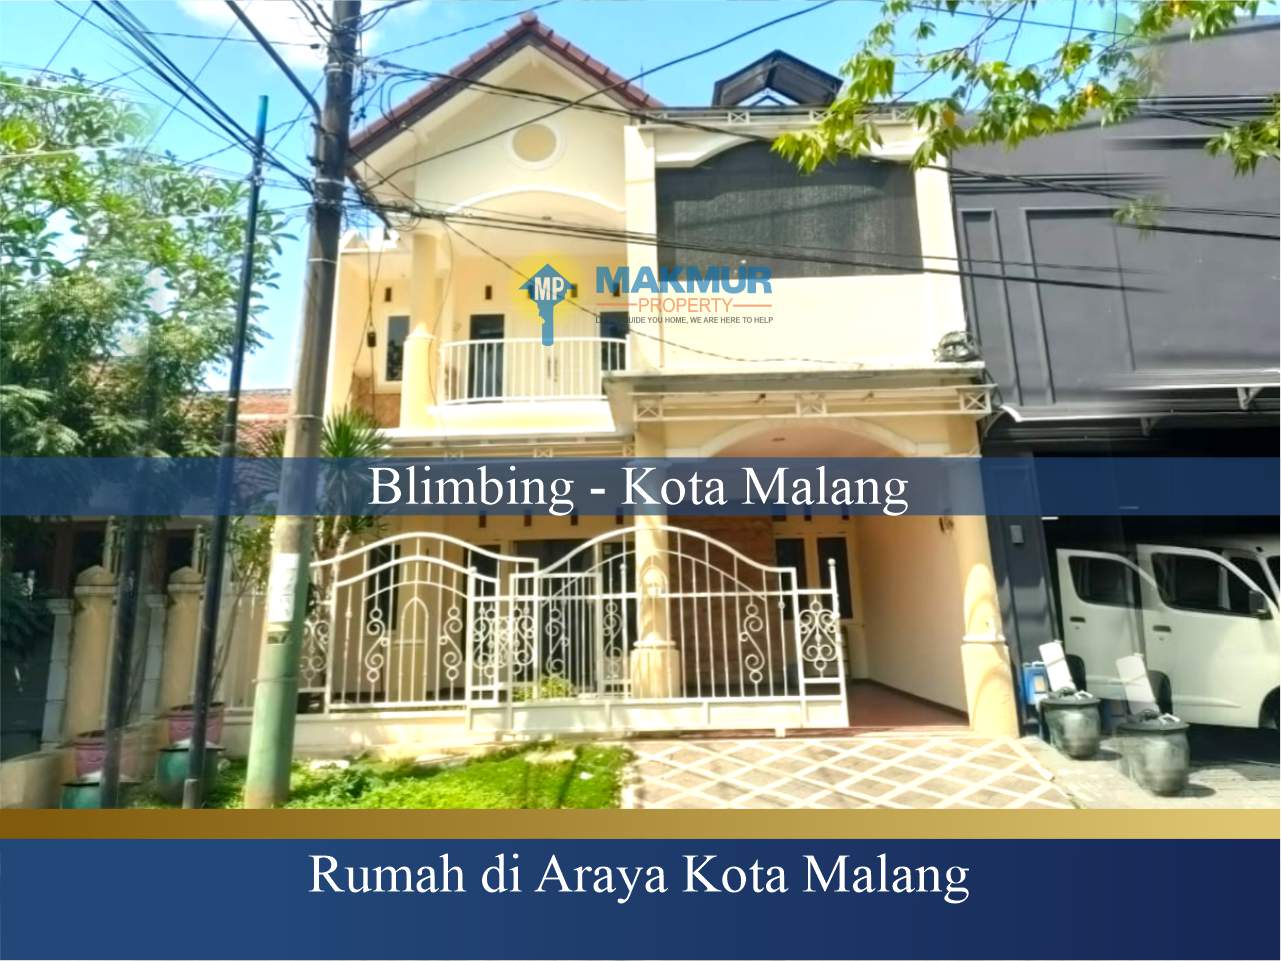 Rumah Minimalis di Malang Kota, Rumah Dijual di Araya Malang, Harga Rumah di Araya Malang, Jual Rumah di Araya Malang, Rumah 2 Lantai di Araya Malang